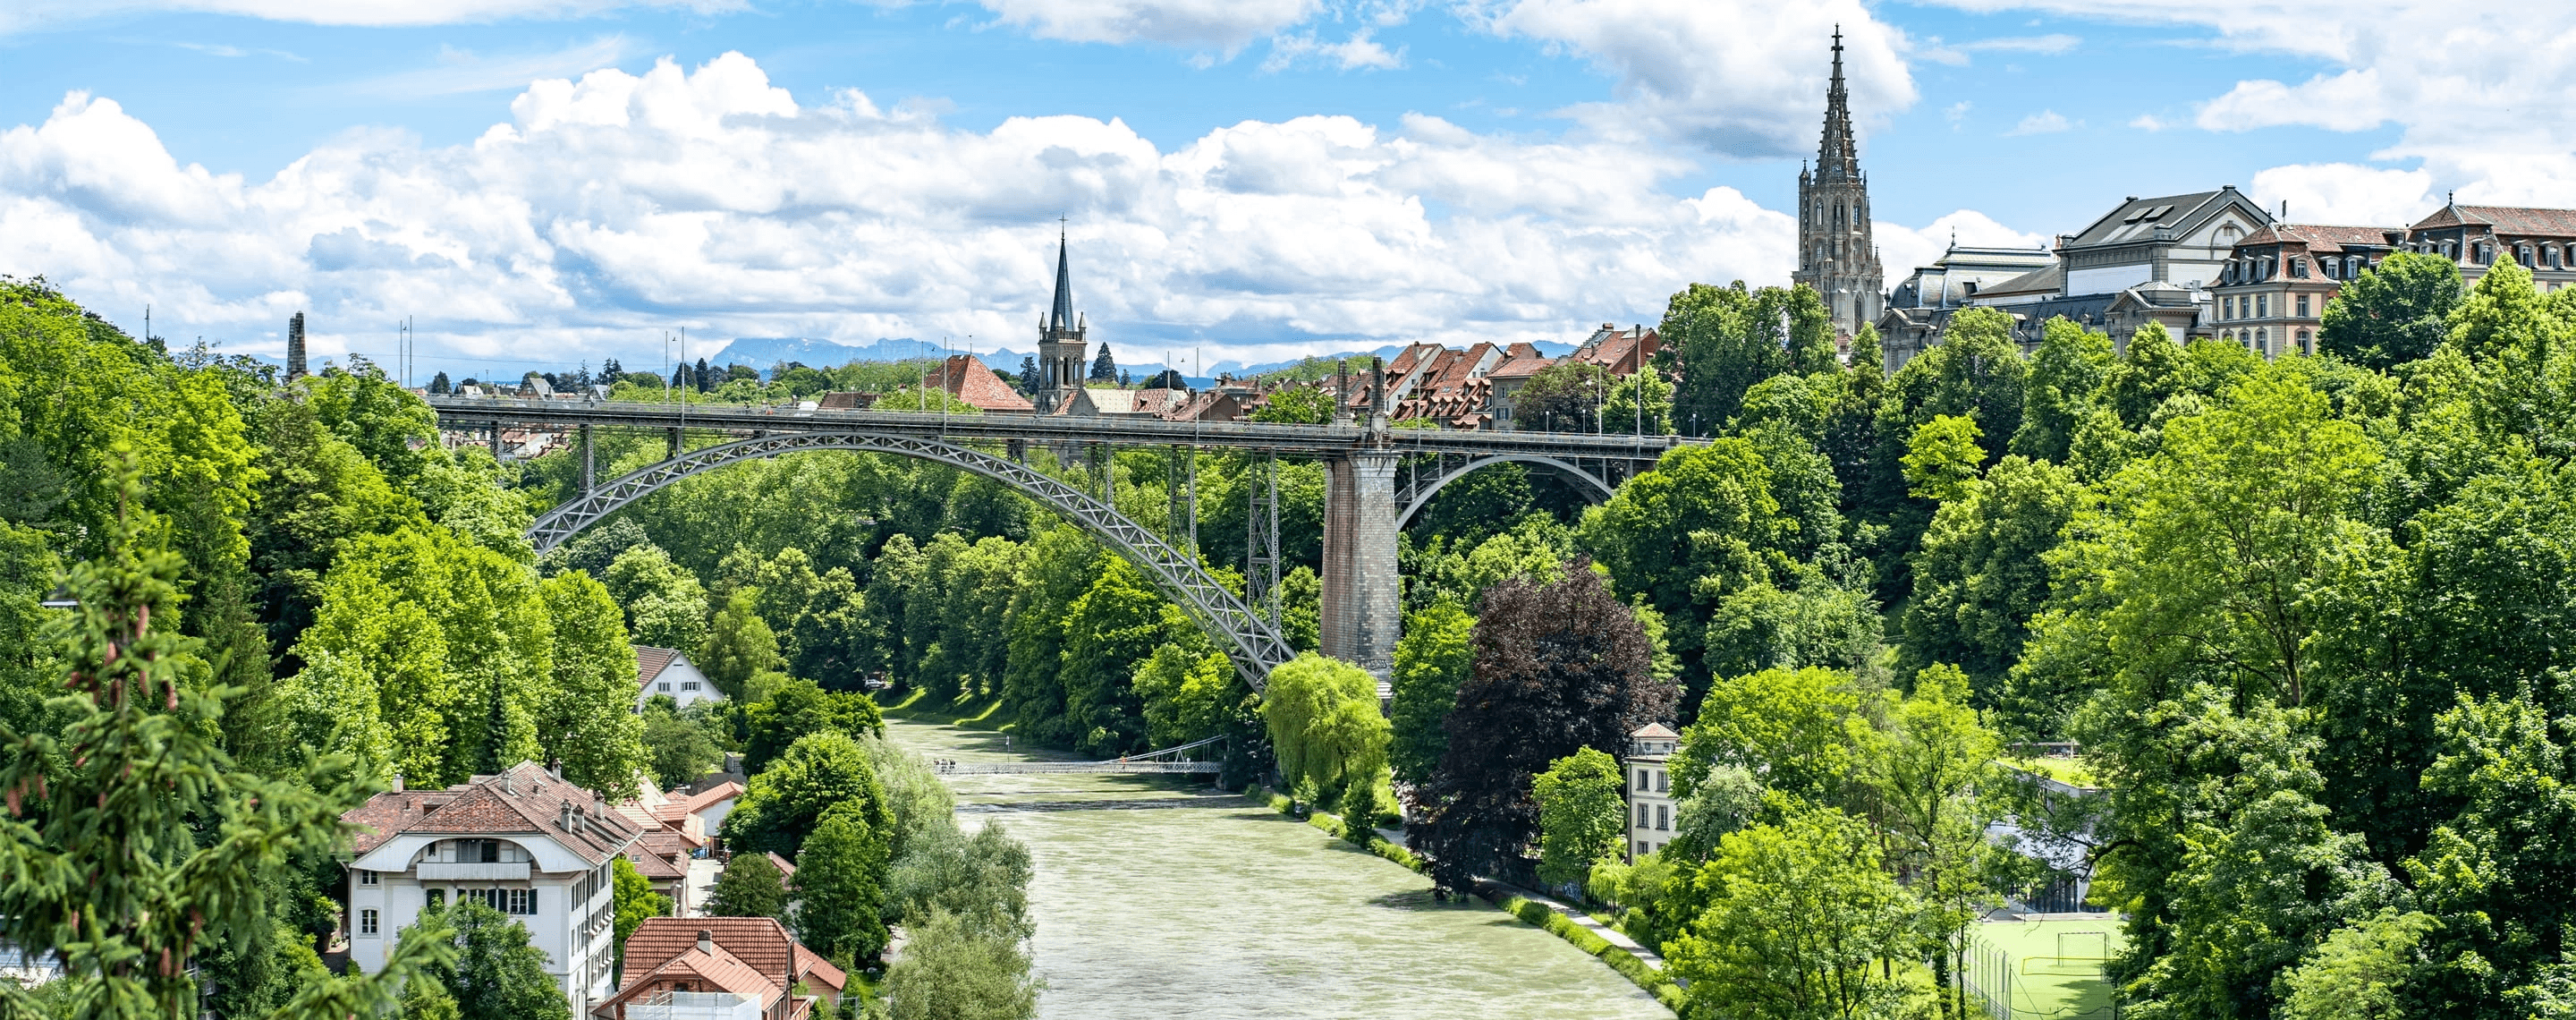 Sicht auf Fluss und Brücke in Bern, Schweiz